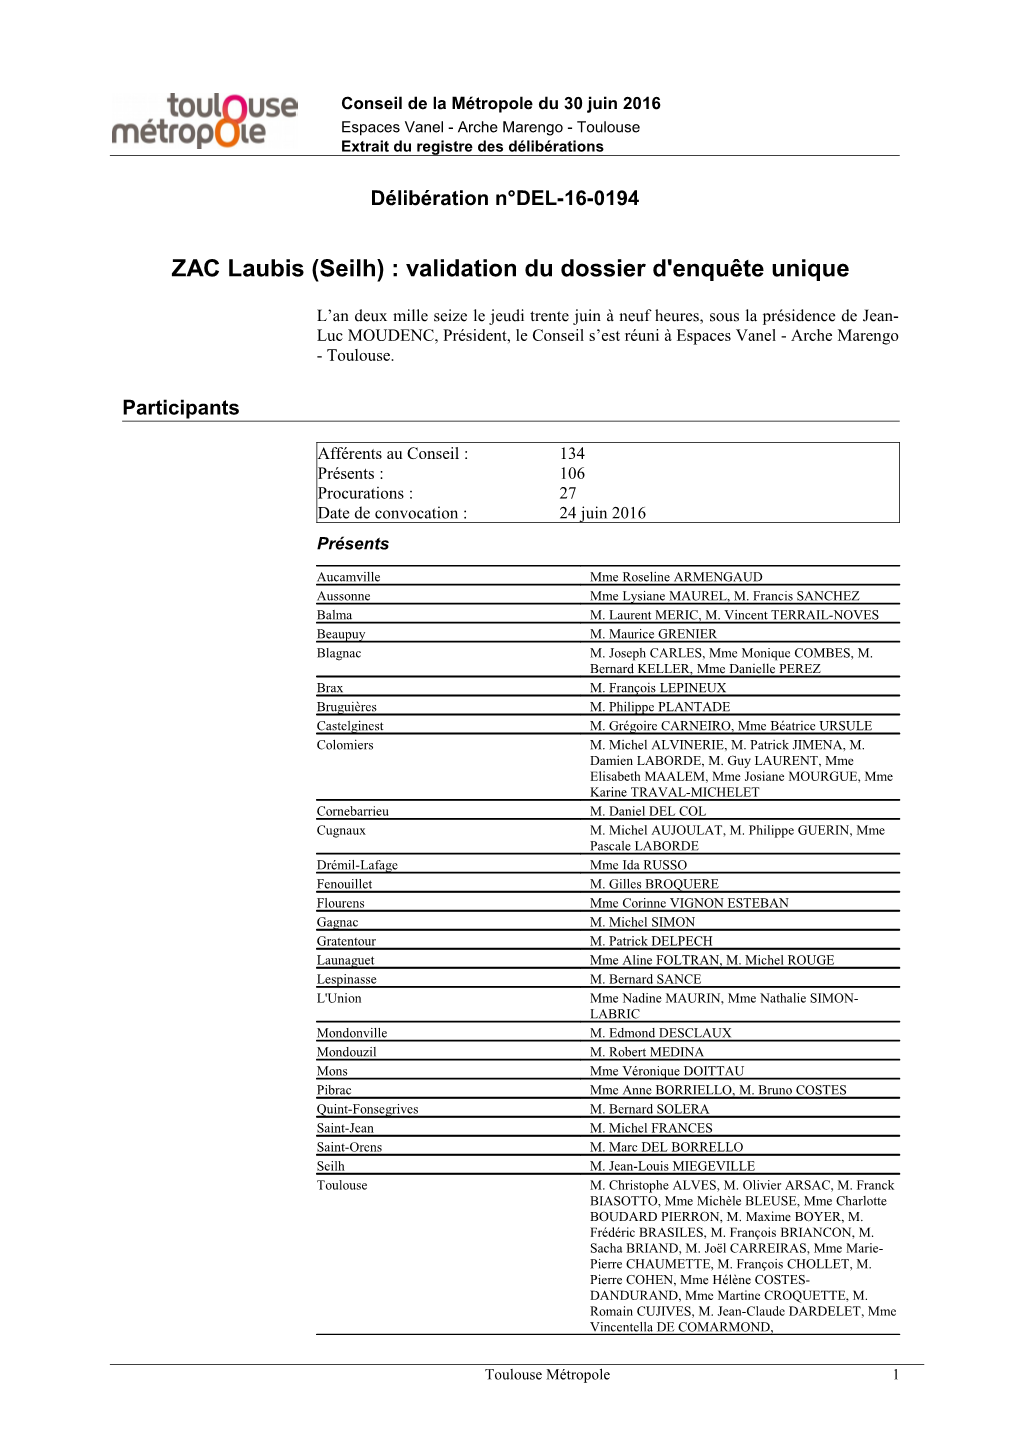 ZAC Laubis (Seilh) : Validation Du Dossier D'enquête Unique